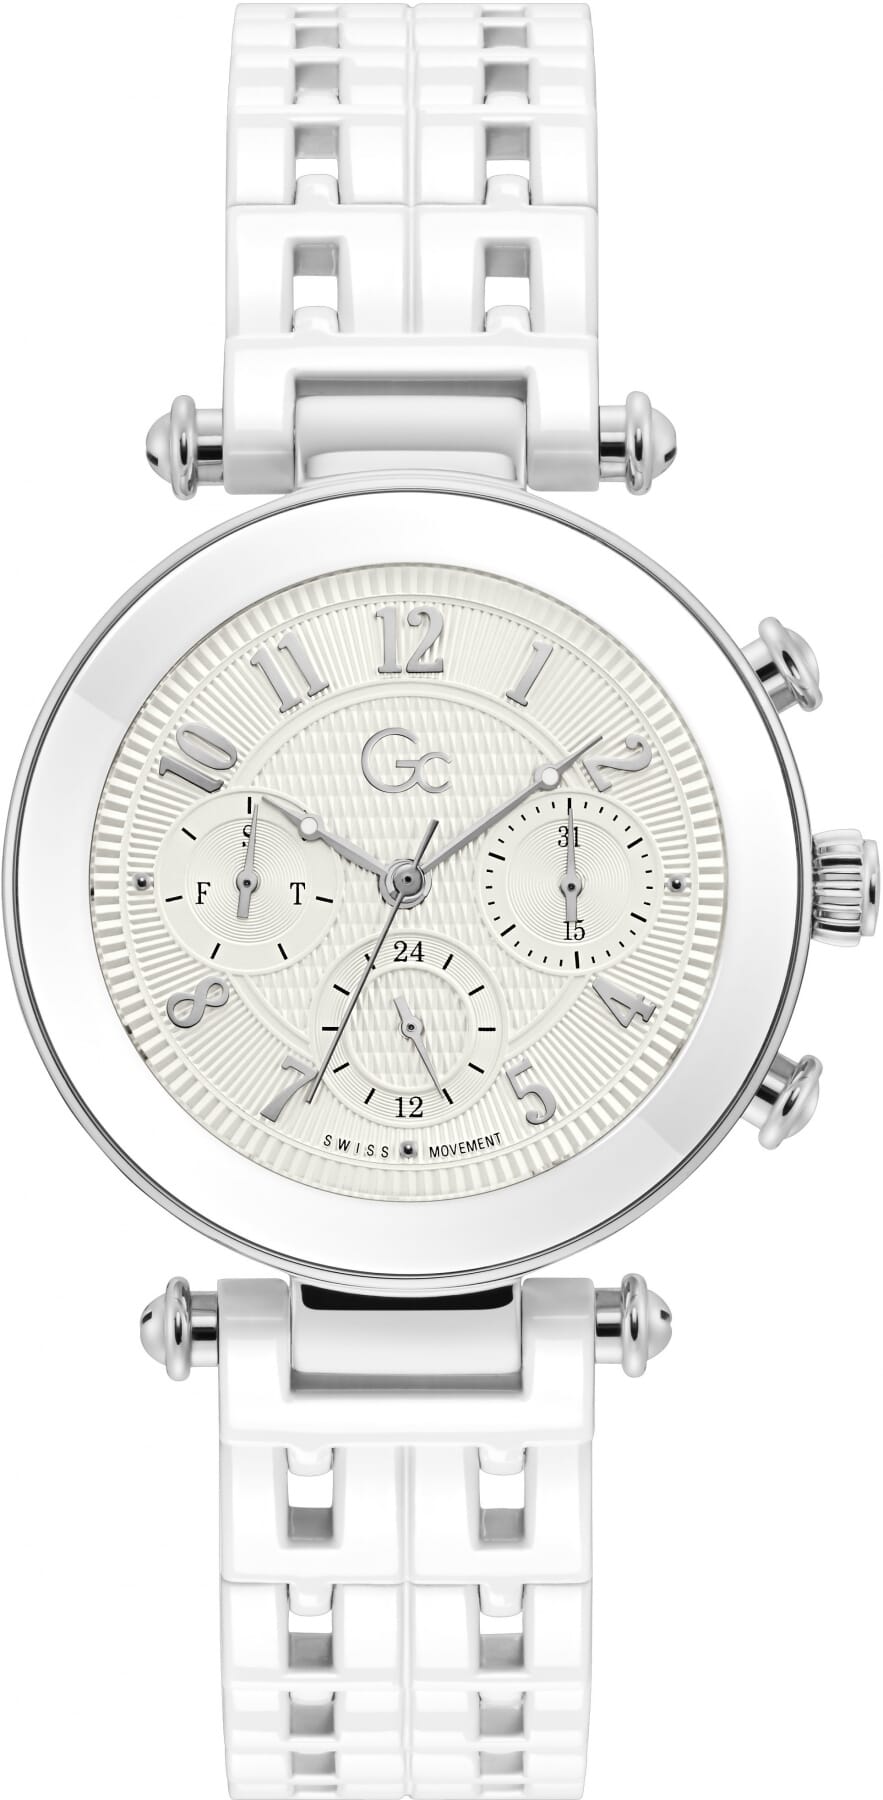 Guess Collection Horloges Y59004l1mf in het Metallic Dames Accessoires voor voor heren Horloges voor heren 